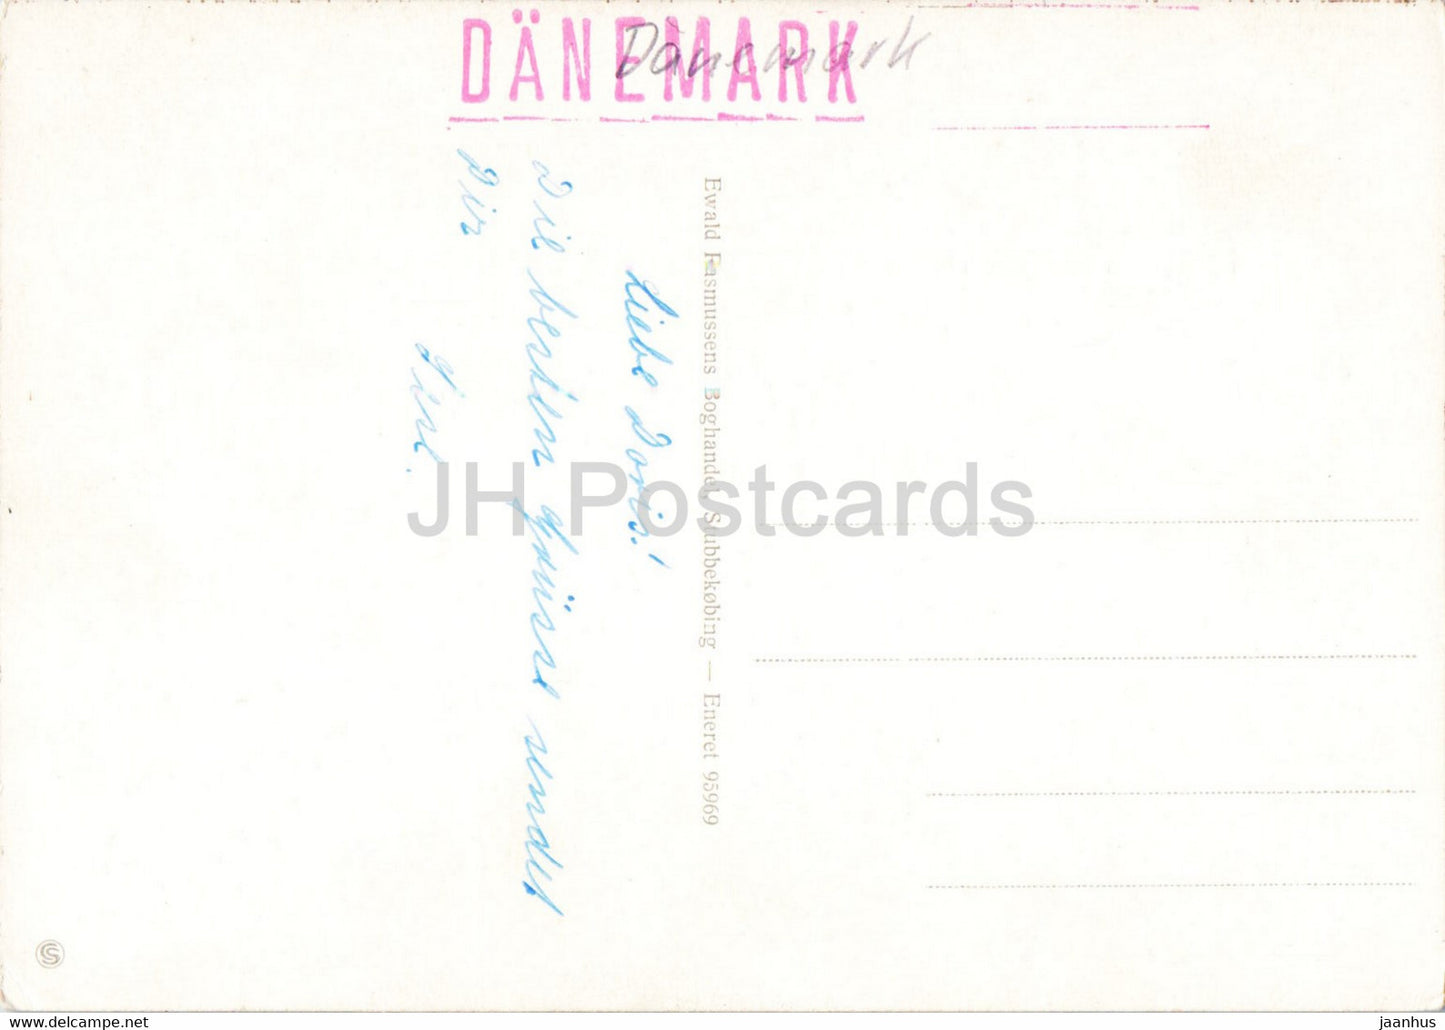 Havnen - Stubbekobing - port - - boat - ship - old postcard - Denmark - used